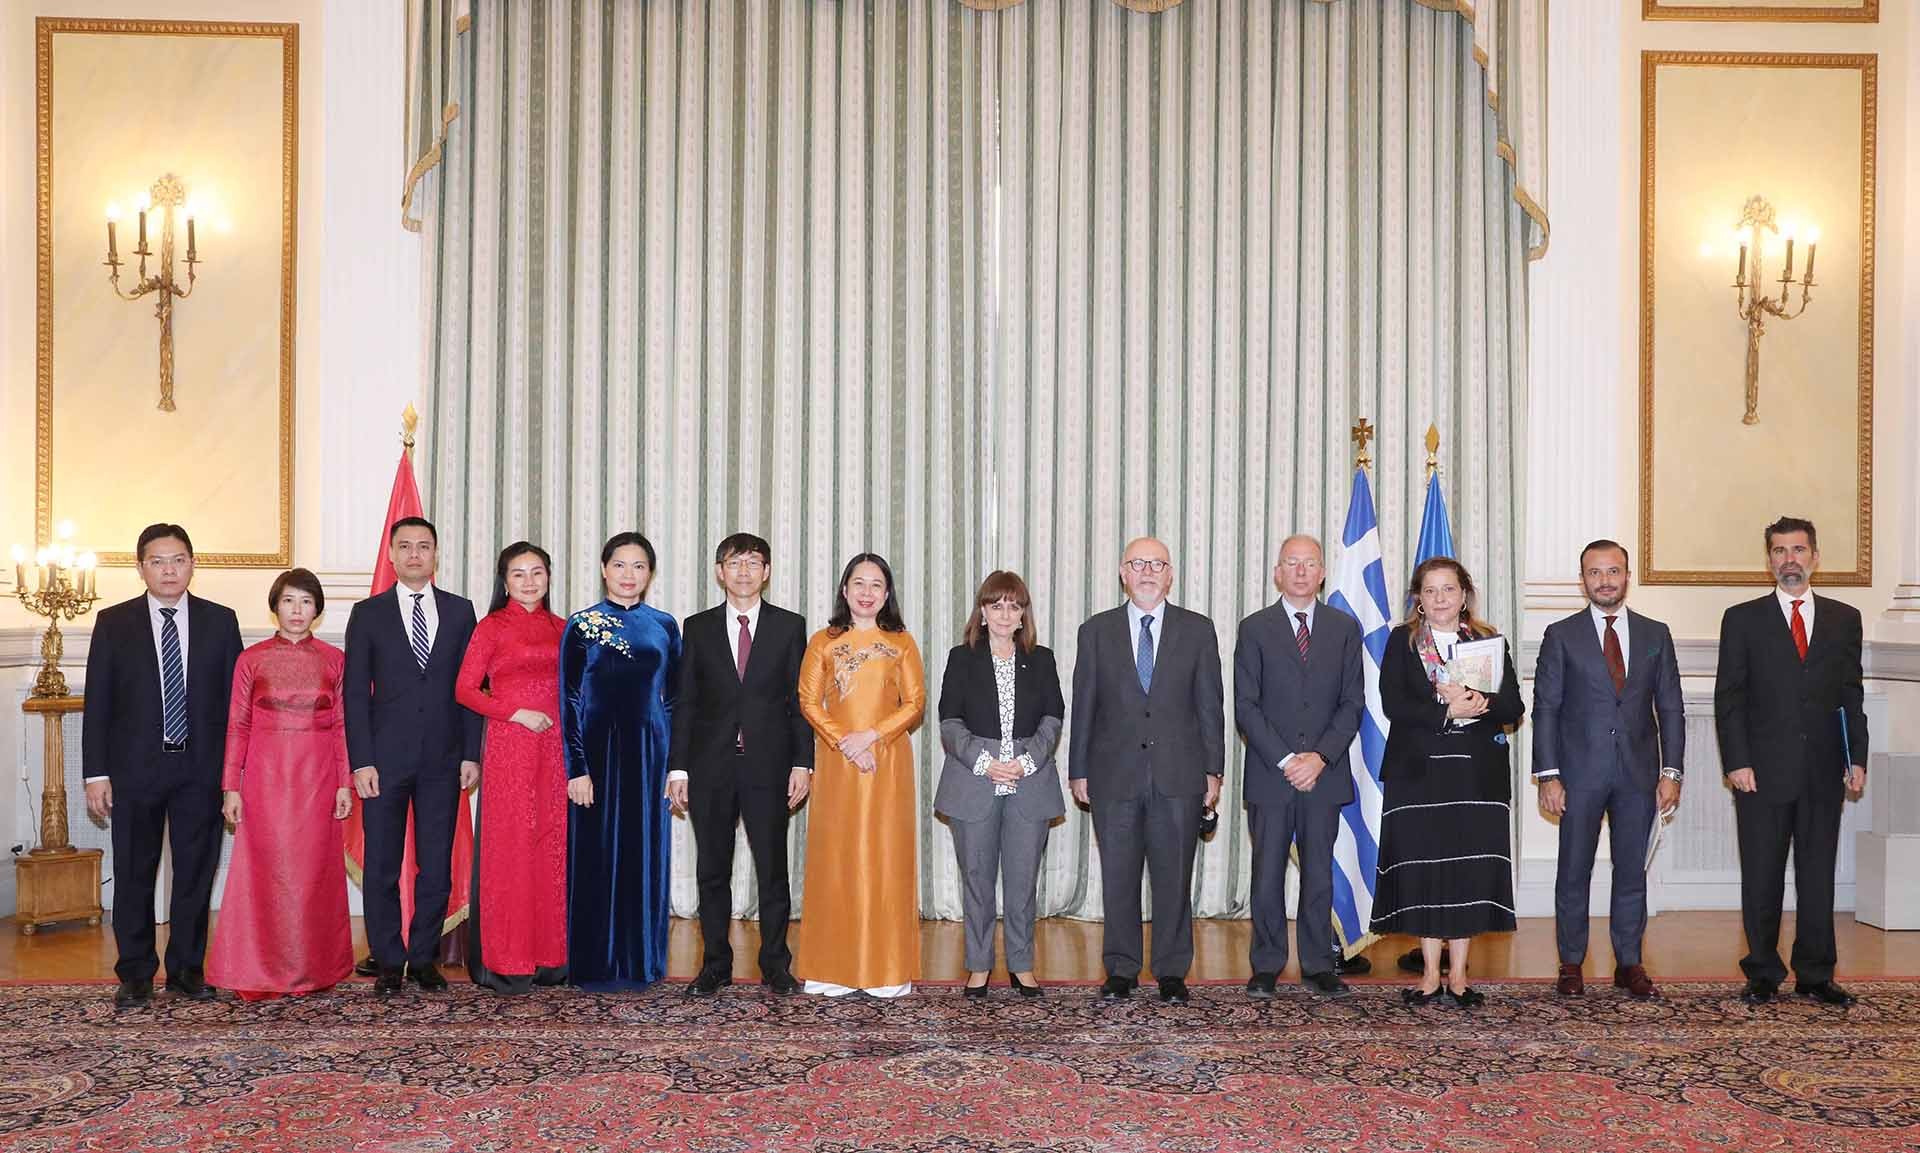 Phó Chủ tịch nước Võ Thị Ánh Xuân thăm chính thức Cộng hòa Hy Lạp